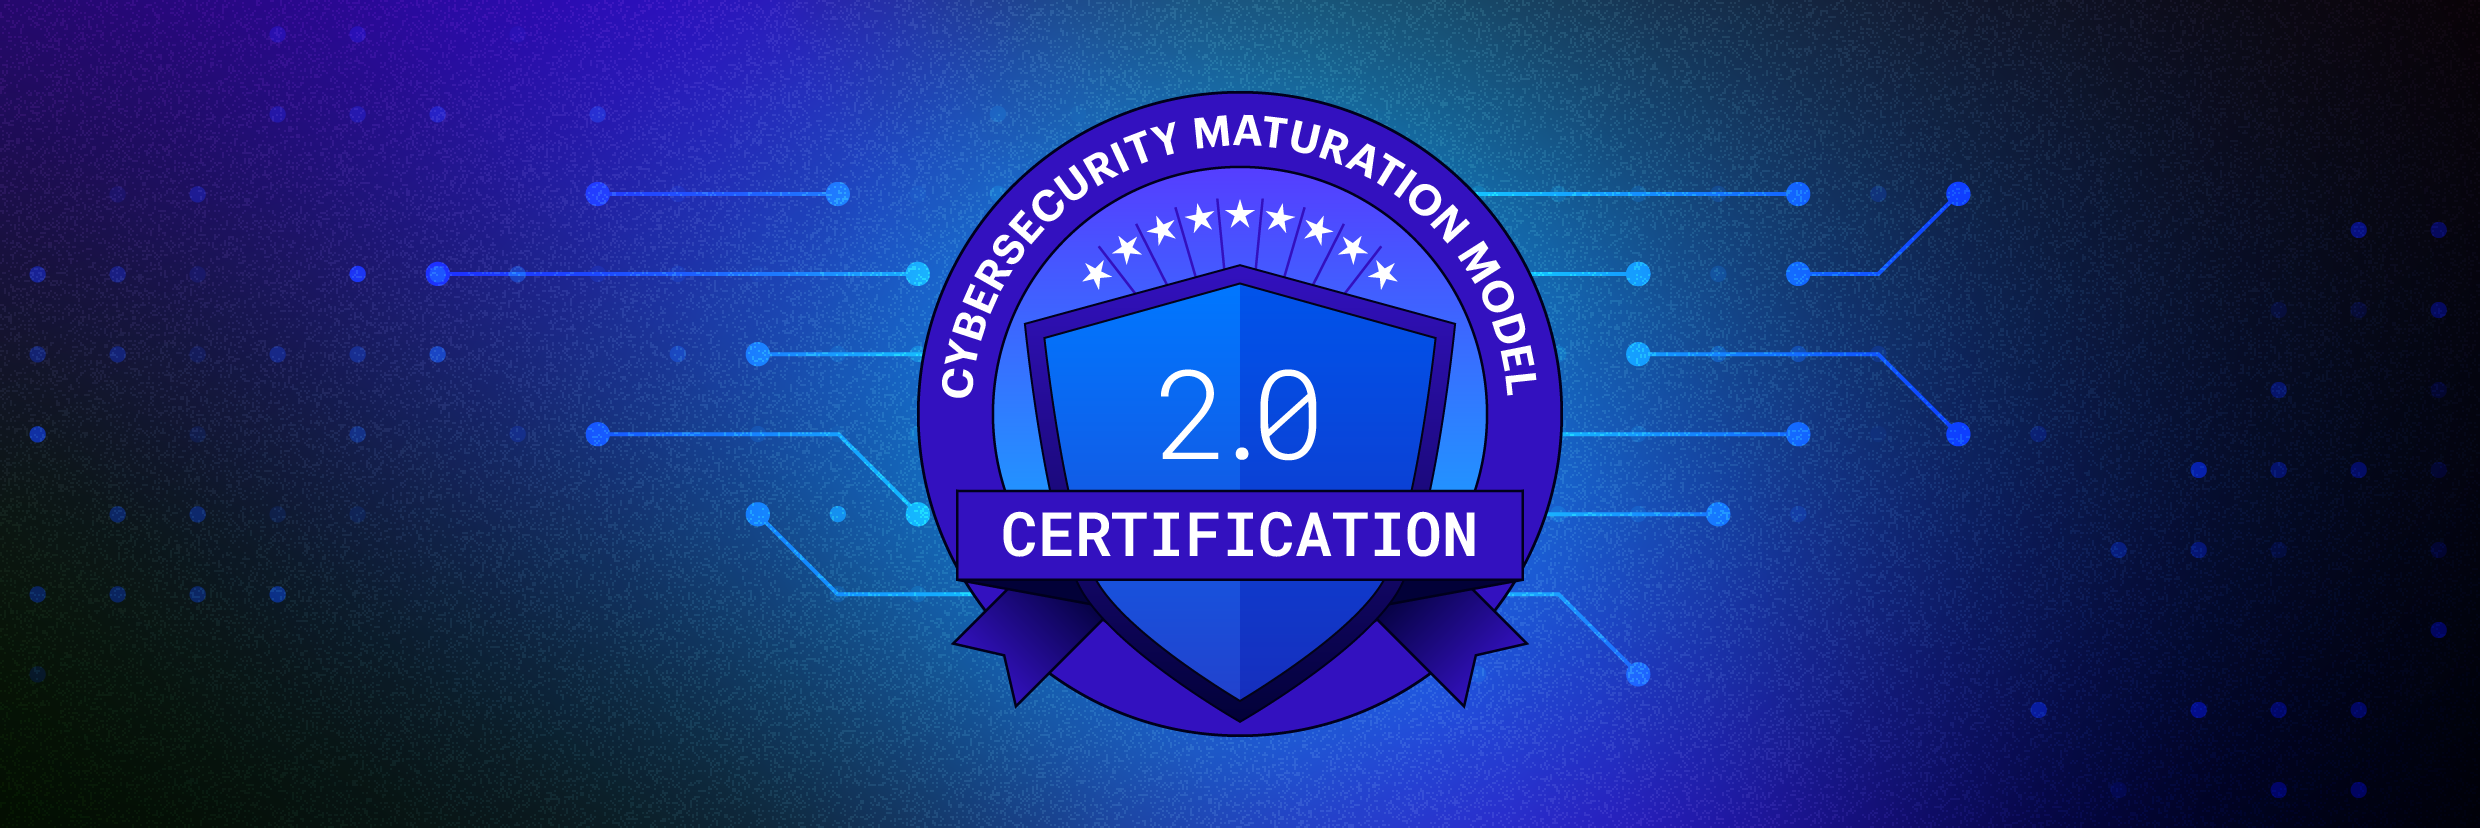 Certificação do Modelo de Maturidade de Segurança Cibernética; CMMC 